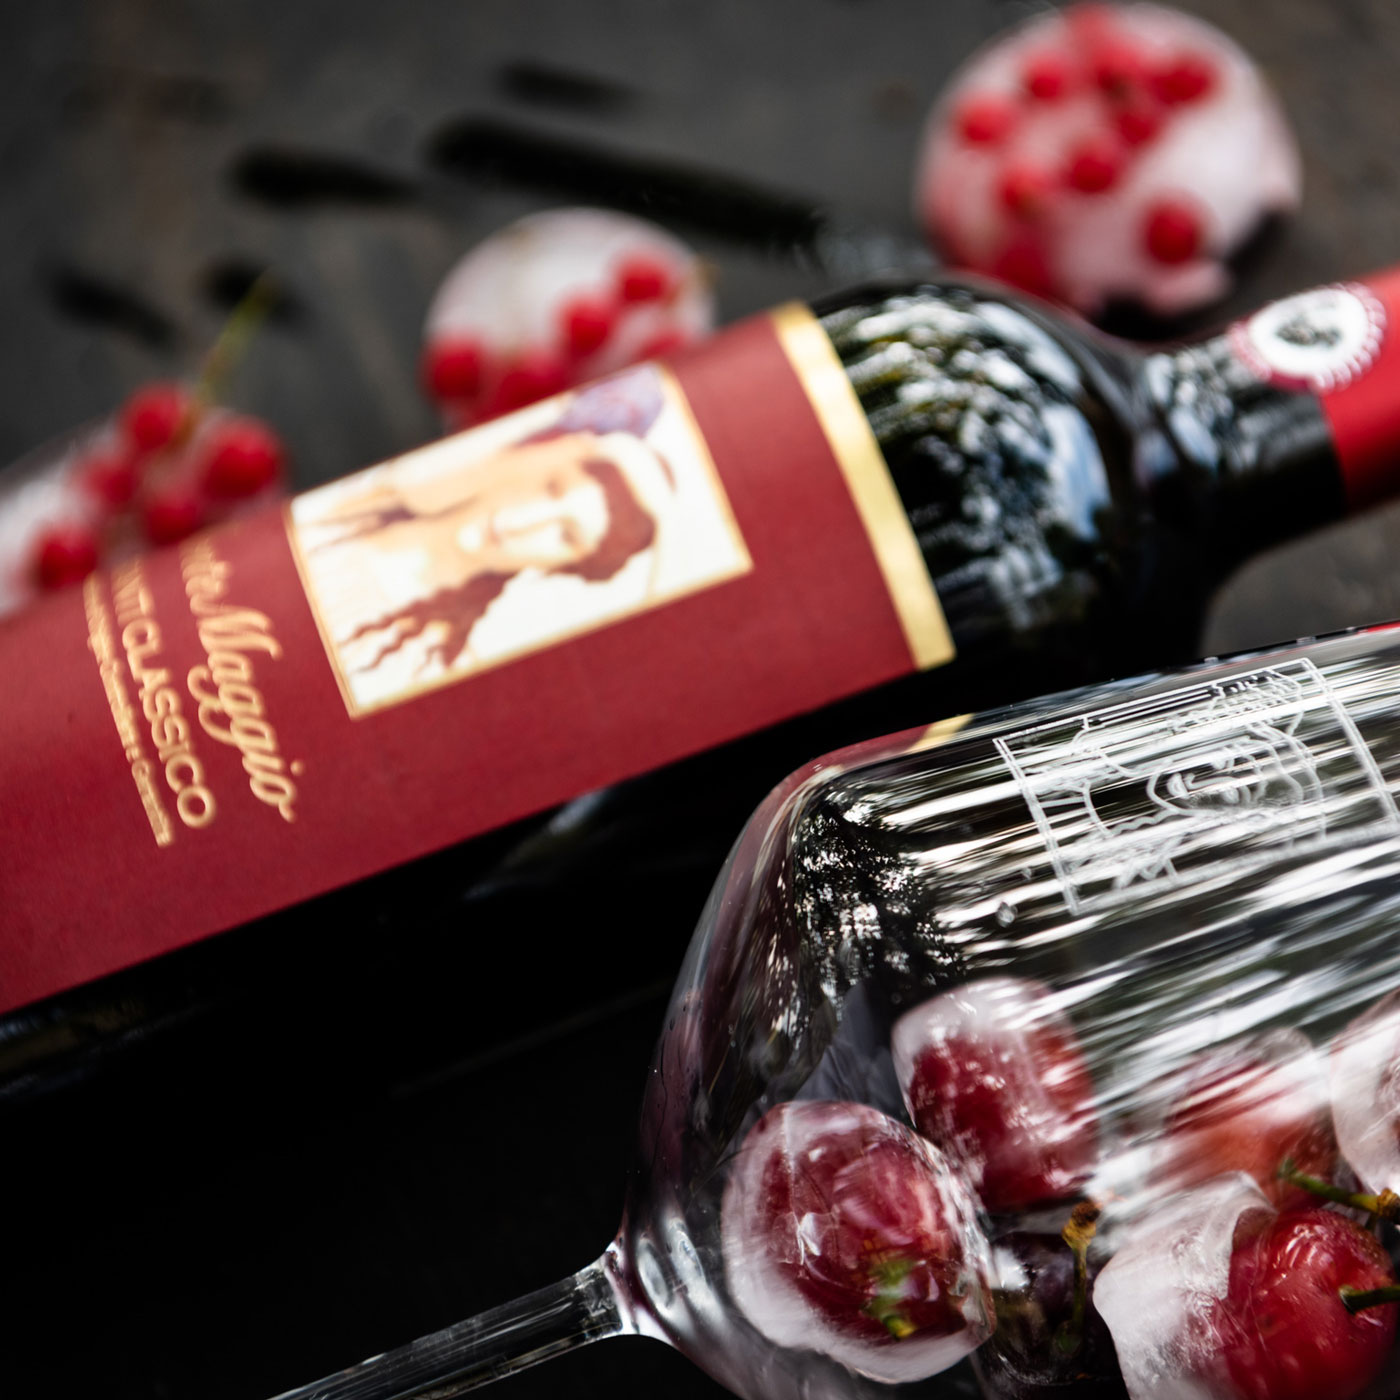 Chianti Classico di Montemaggio is a handcrafted organic red wine